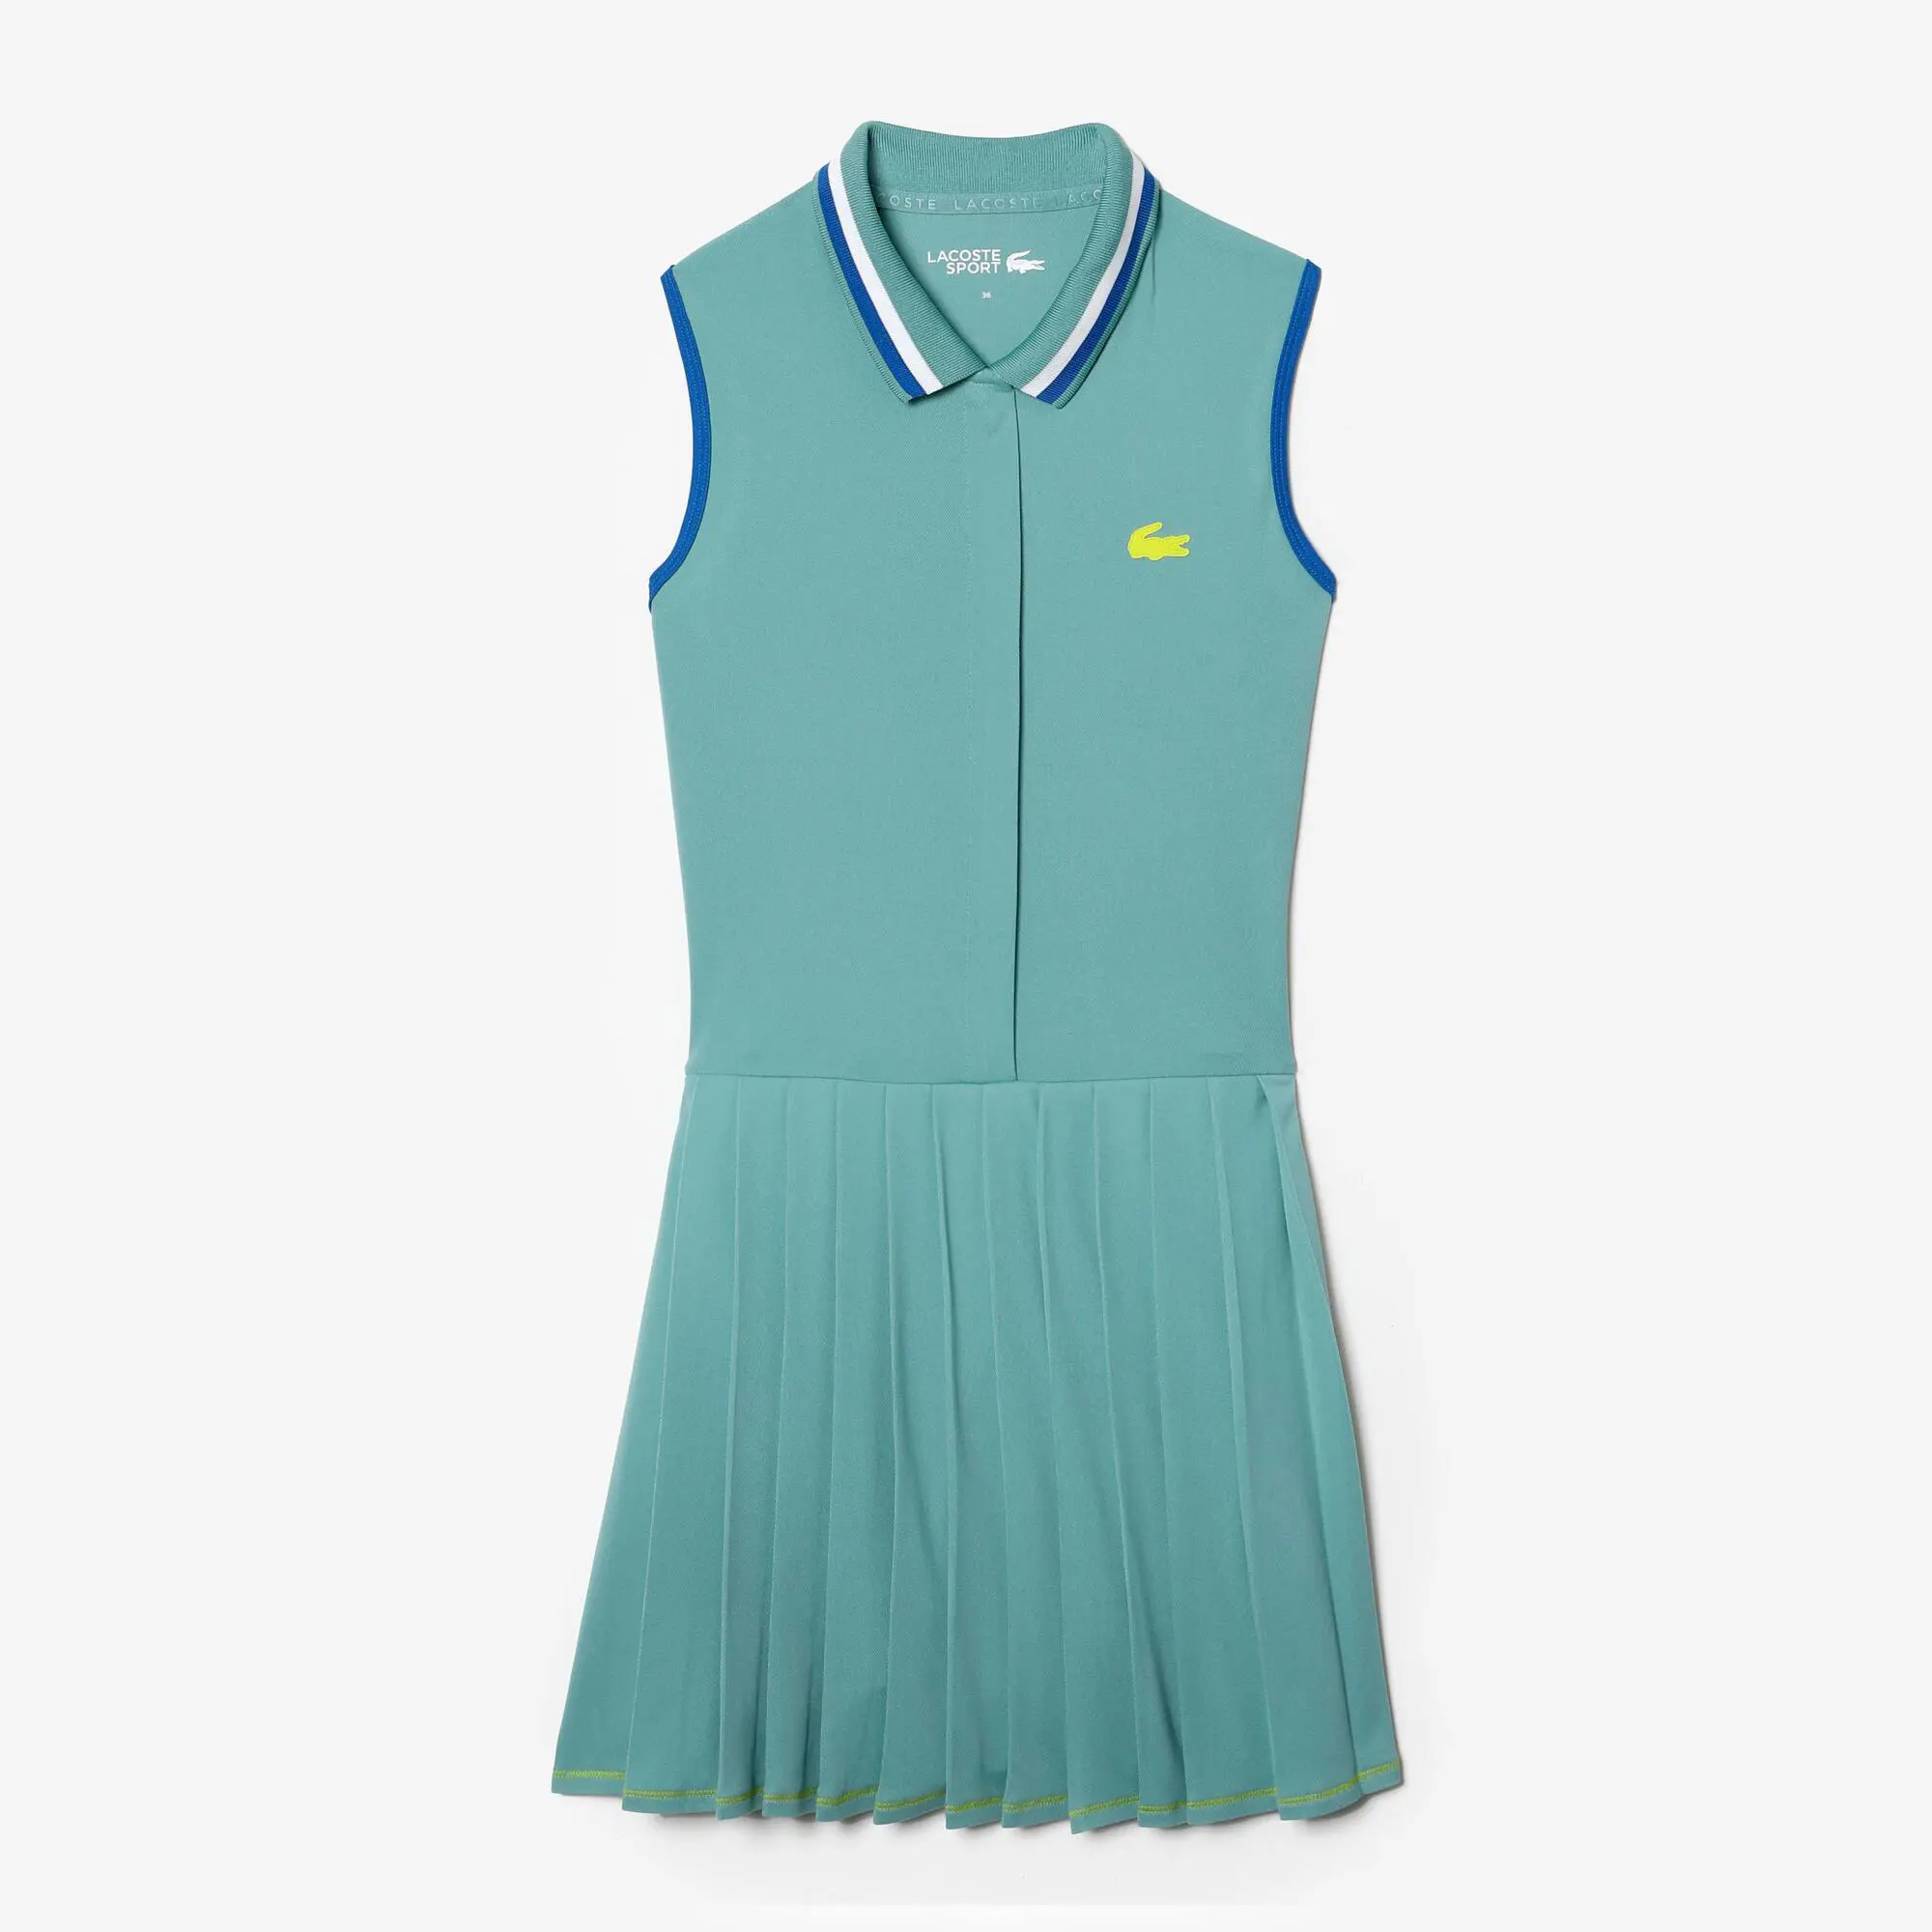 Lacoste Women's Lacoste SPORT Built-In Shorty Pleated Tennis Dress. 2